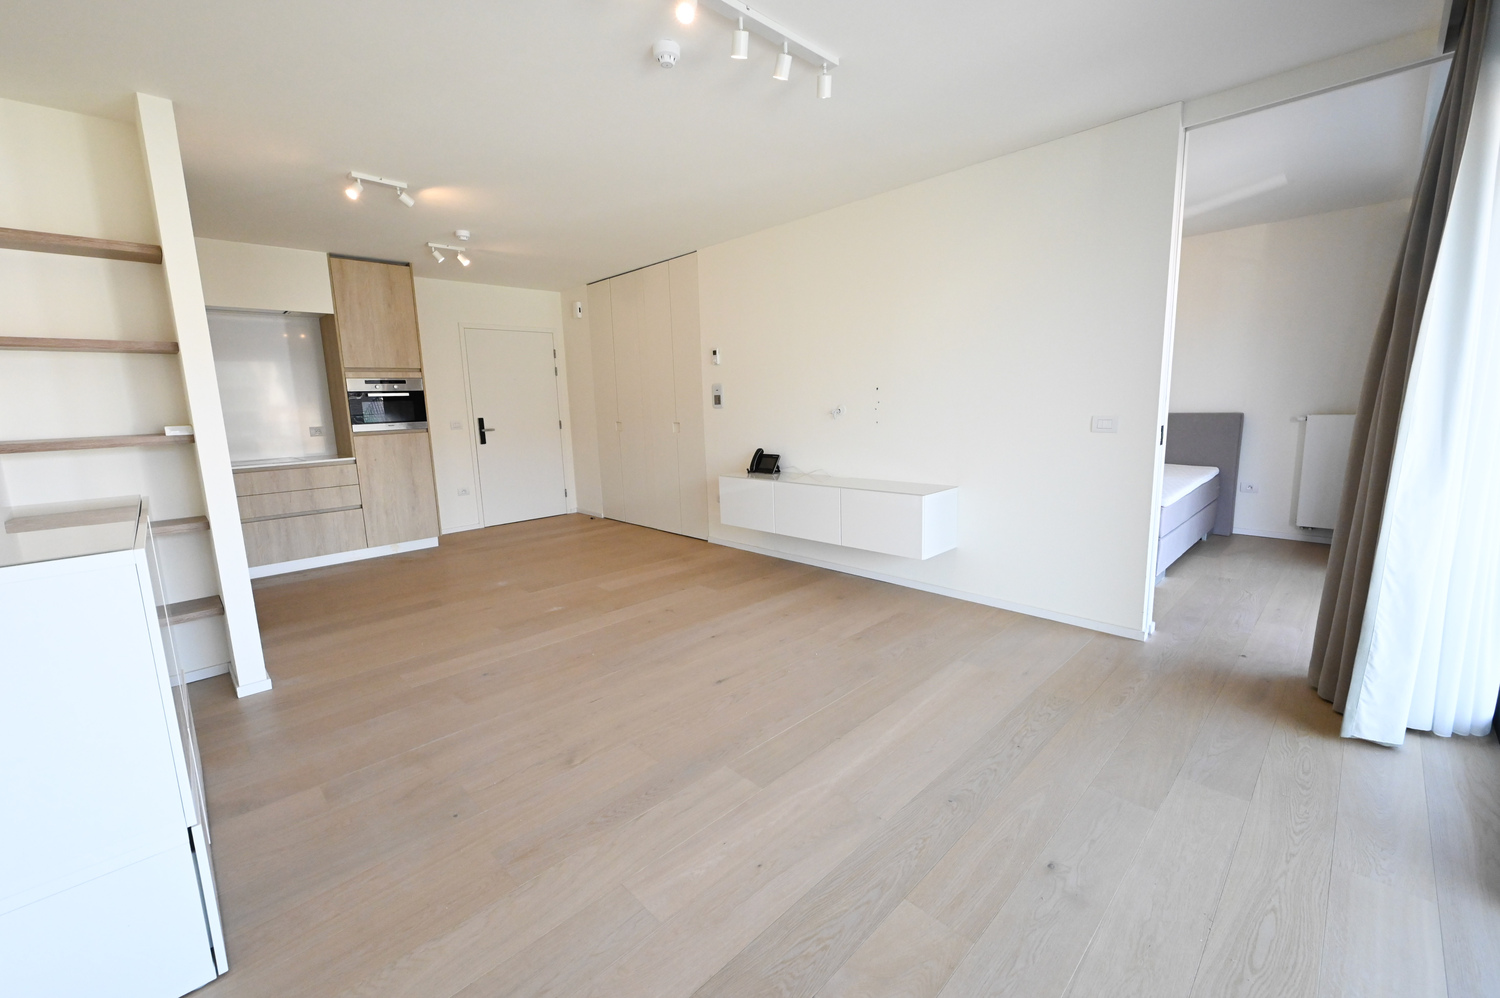 ONGEMEUBELD: SERVICEFLAT: Lichtrijk 1-slaapkamer appartement nabij de Konings &amp; Lippenslaan in de Residentie Cypres. 